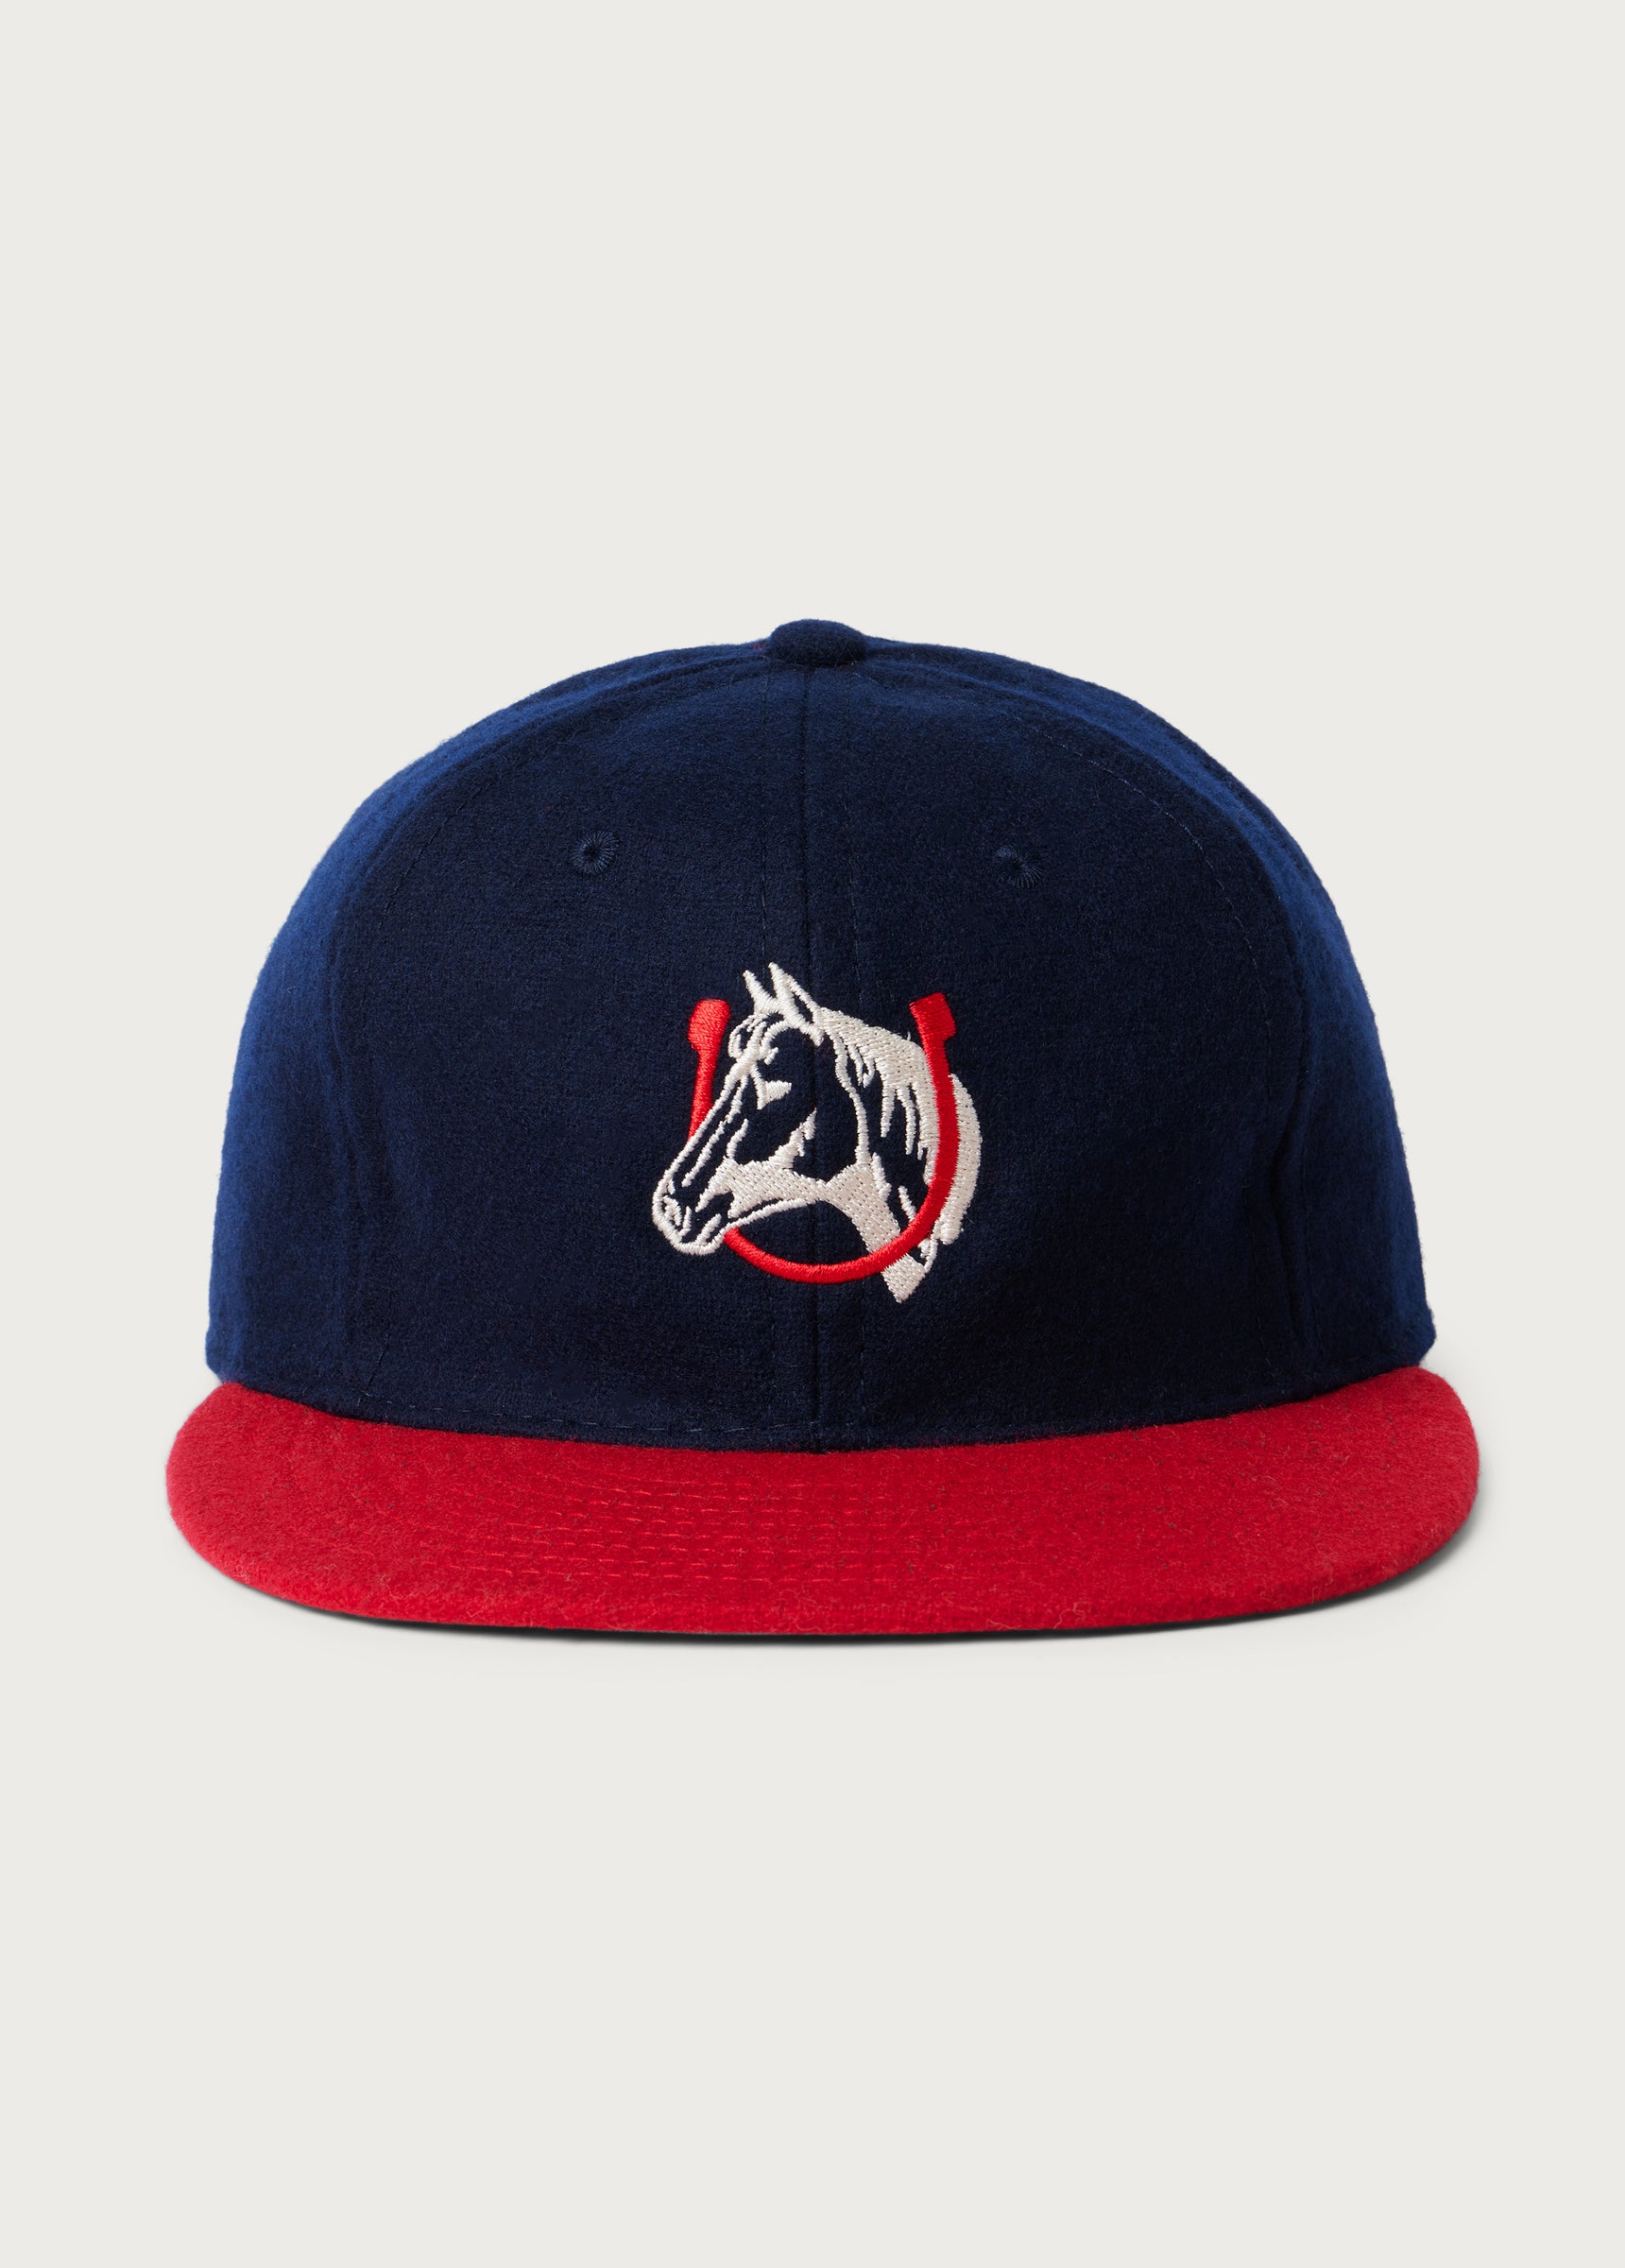 Team Hat | Navy / Red